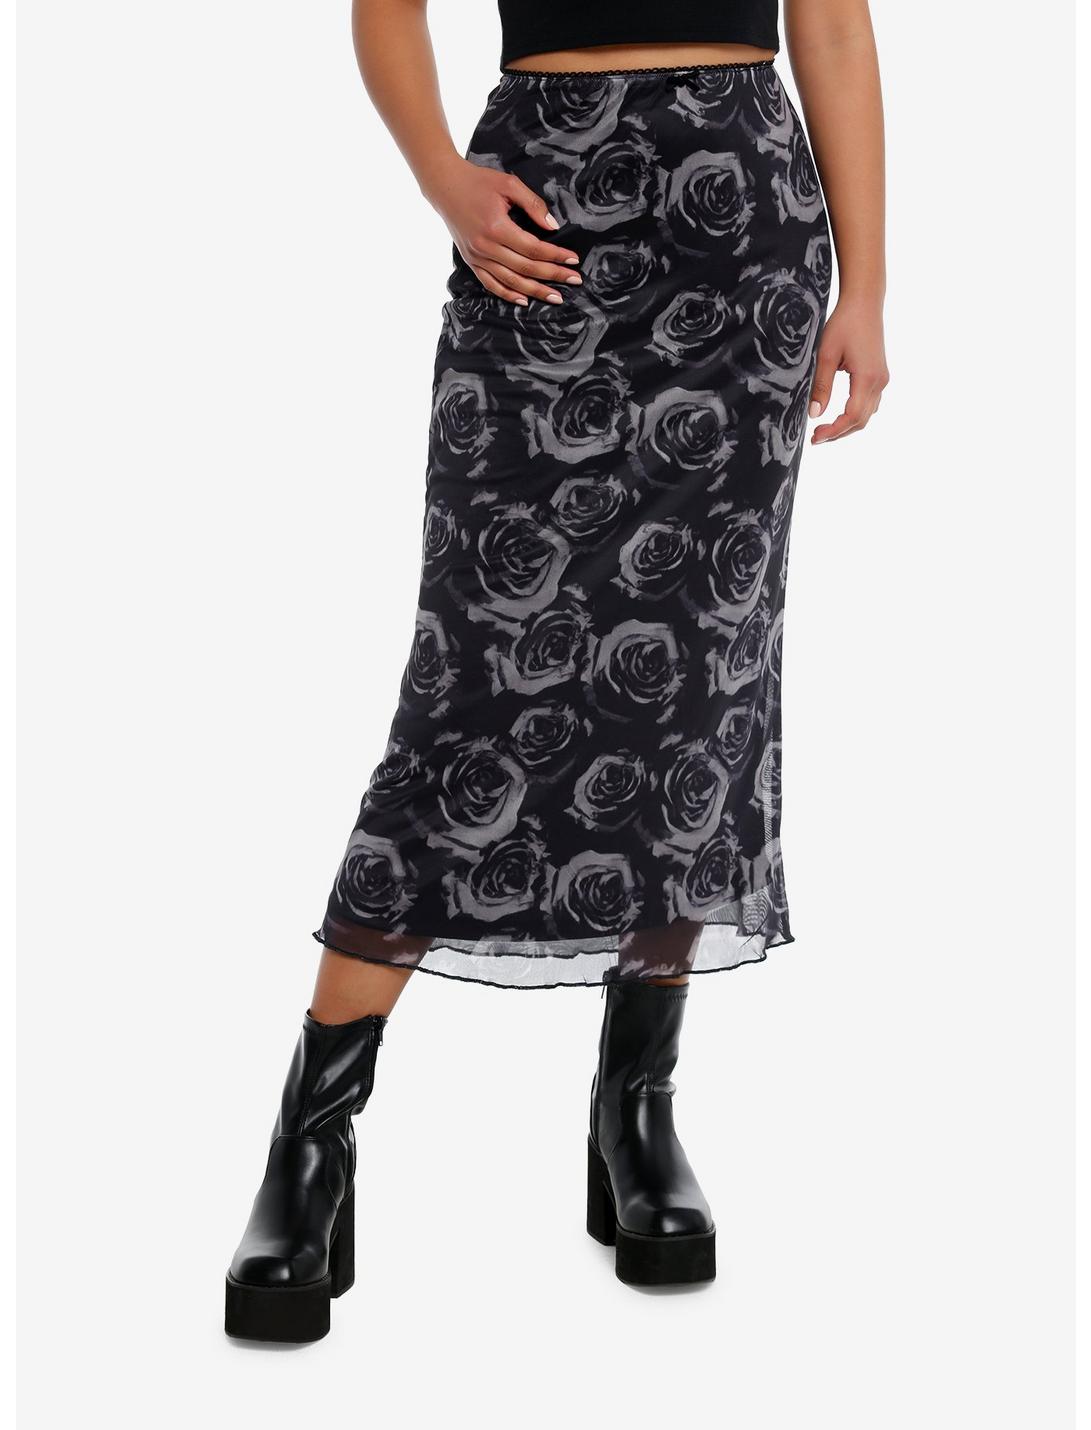 Cosmic Aura® Black & Grey Roses Midi Skirt, BLACK, hi-res